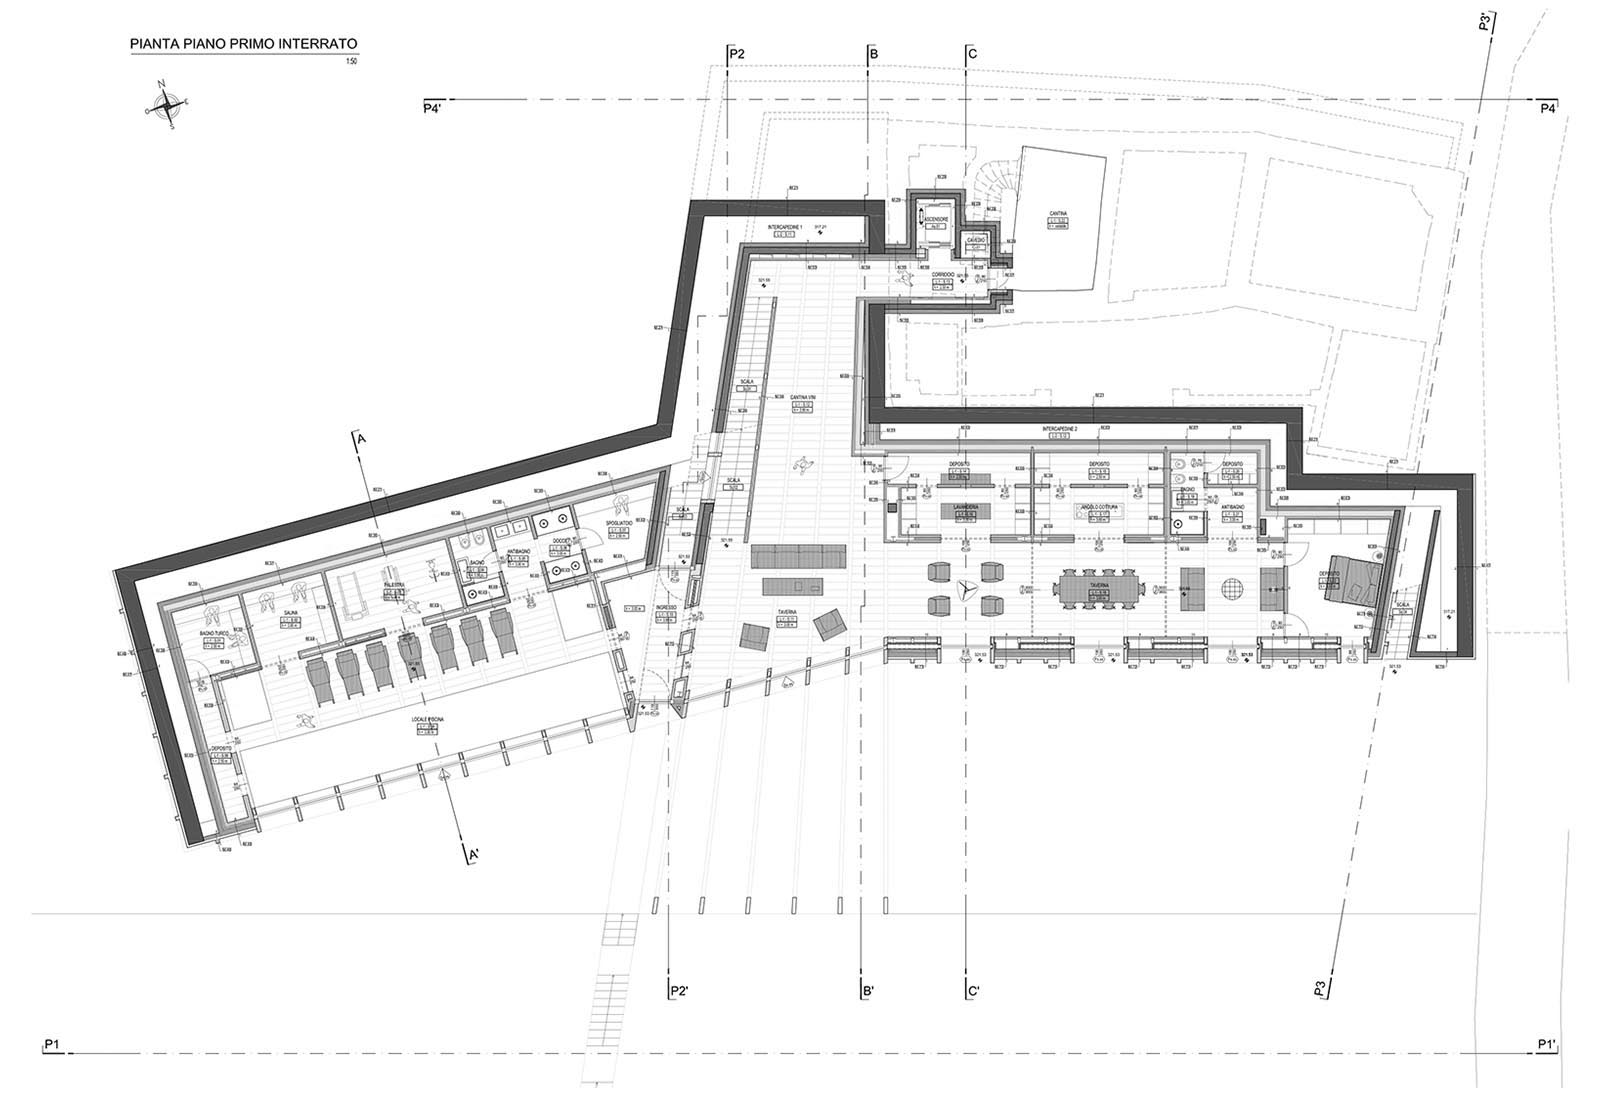 House in Sotto il Monte Giovanni XXIII - First underground floor plan